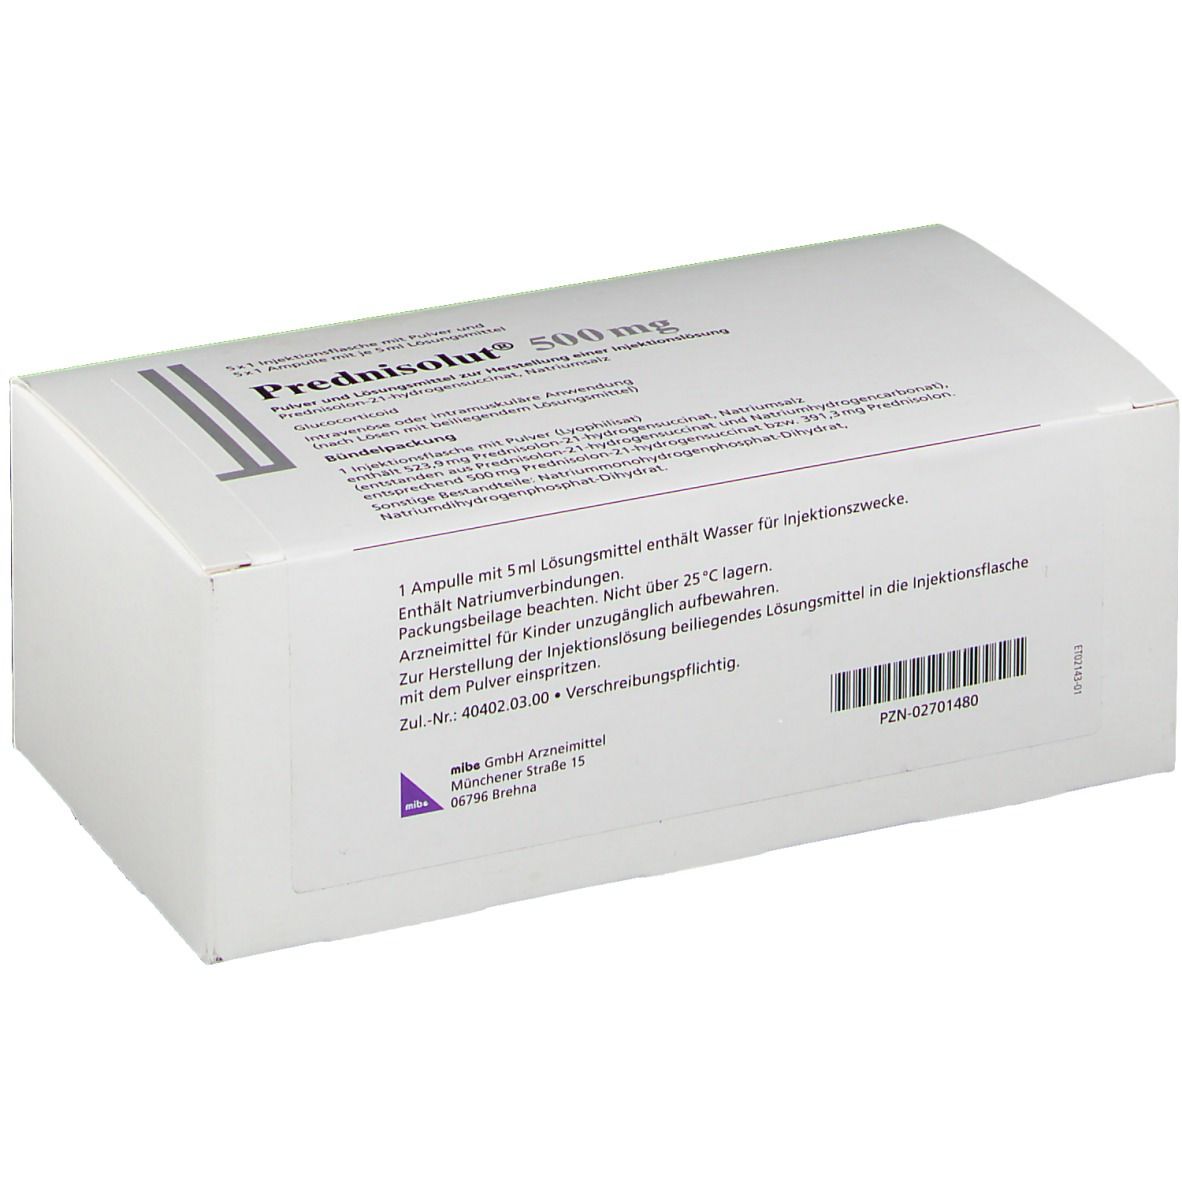 Prednisolut® 500 mg